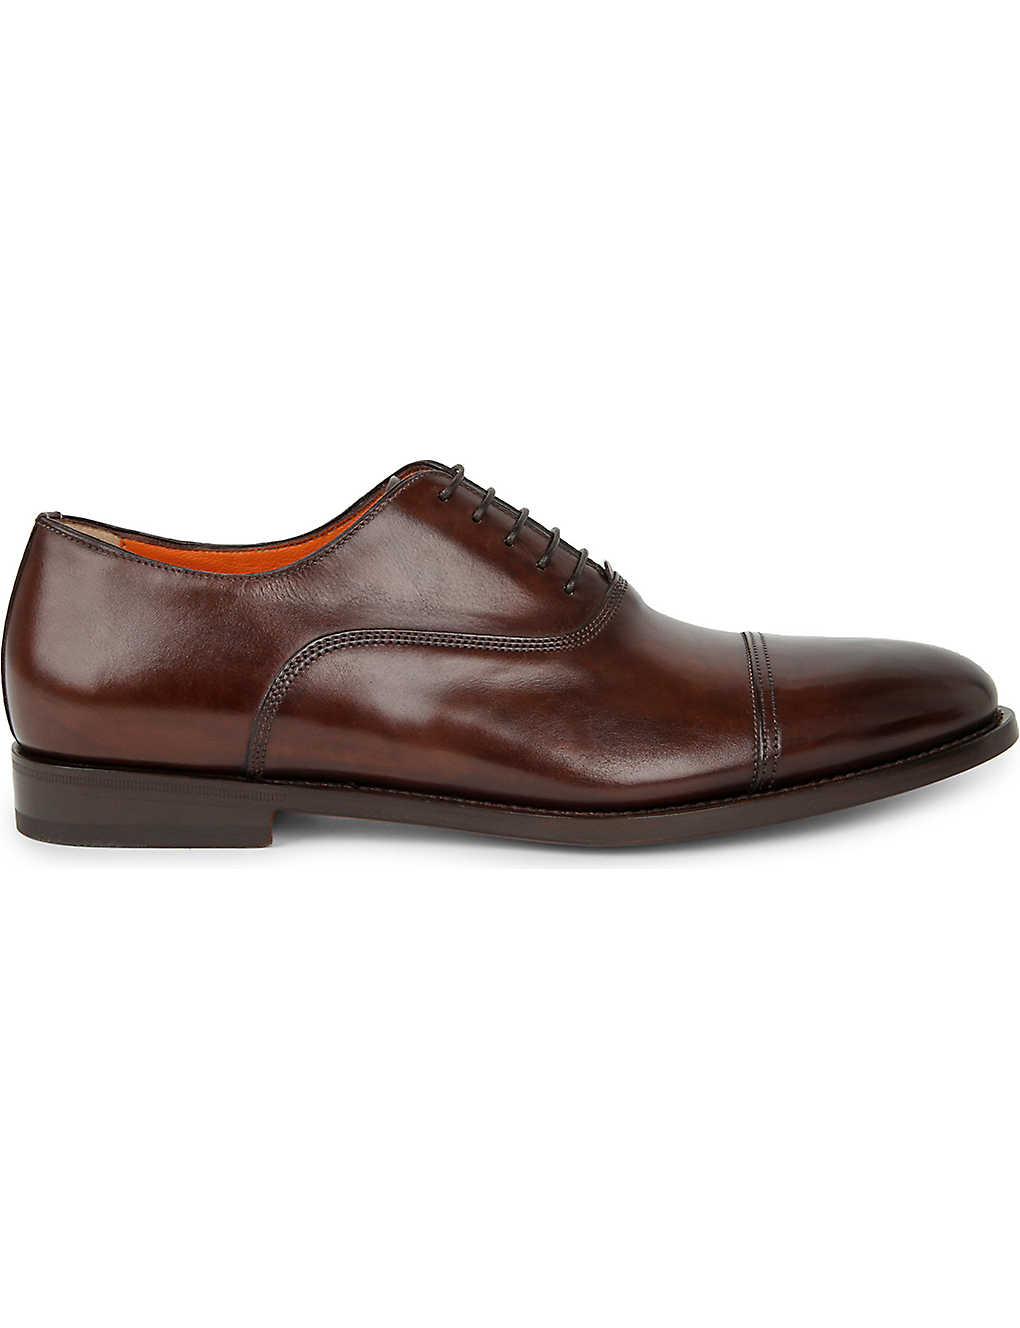 SANTONI - Leather Oxford shoes | Selfridges.com